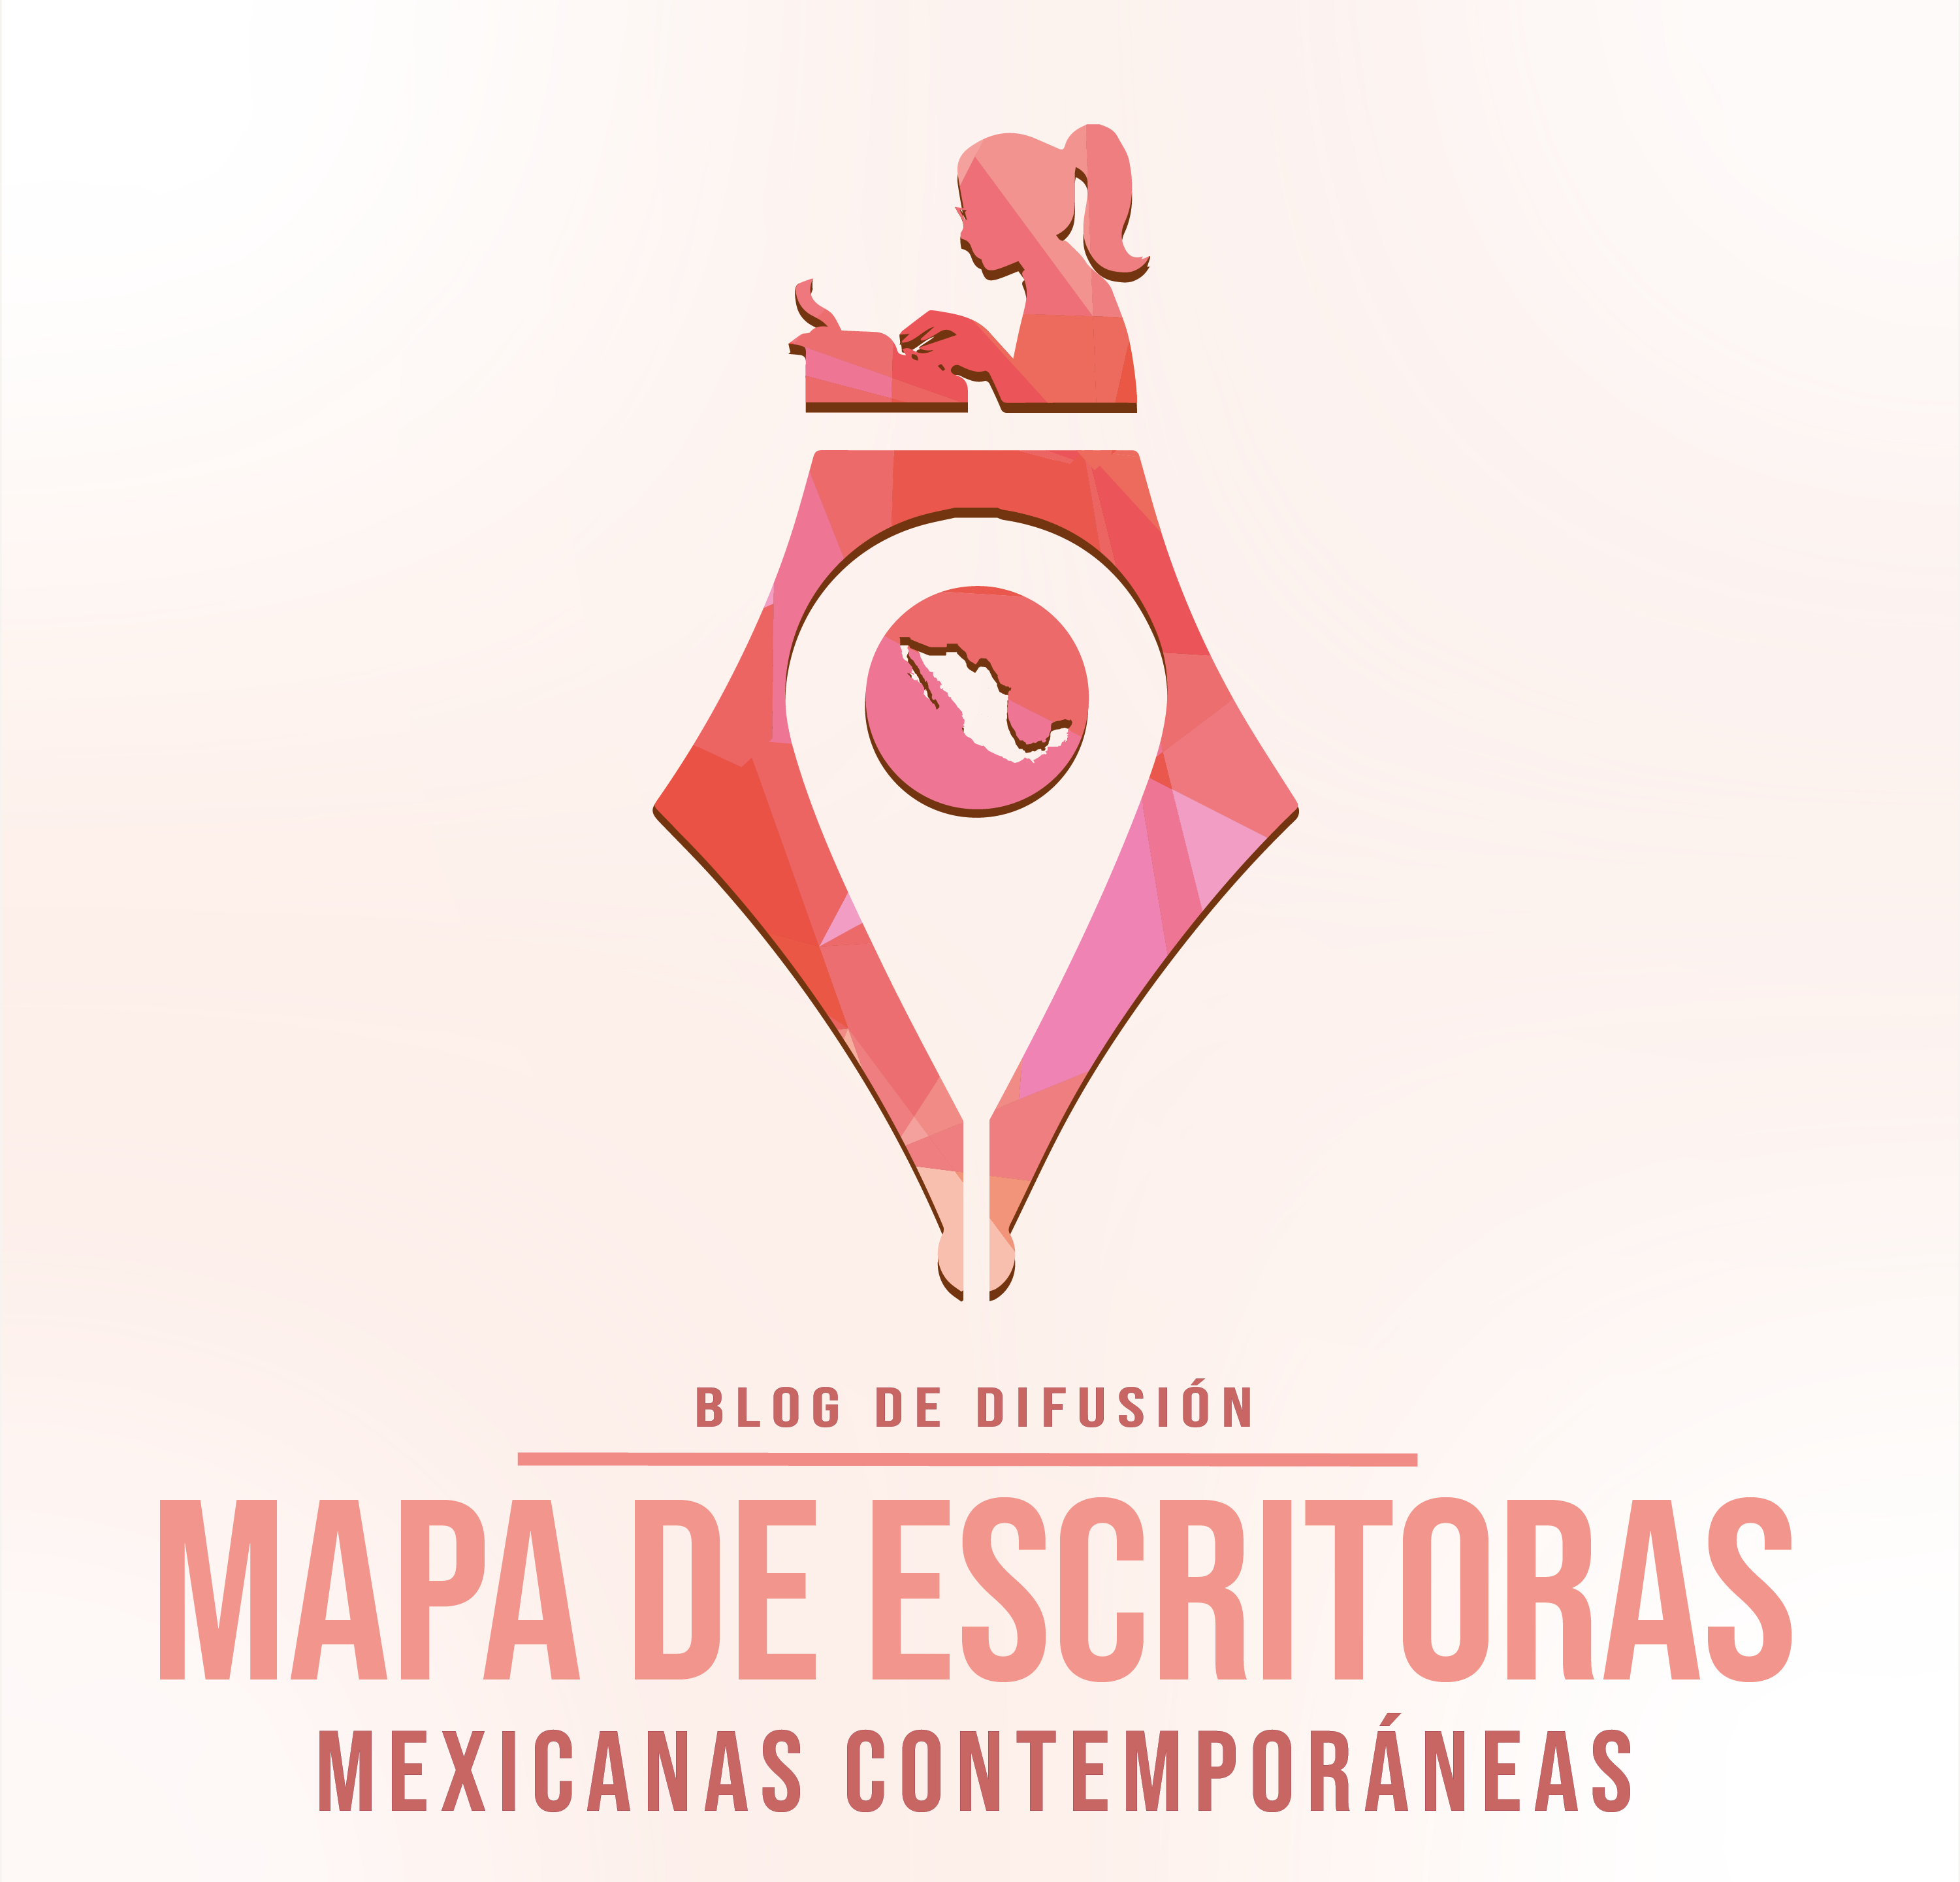 MAPA DE ESCRITORAS MEXICANAS